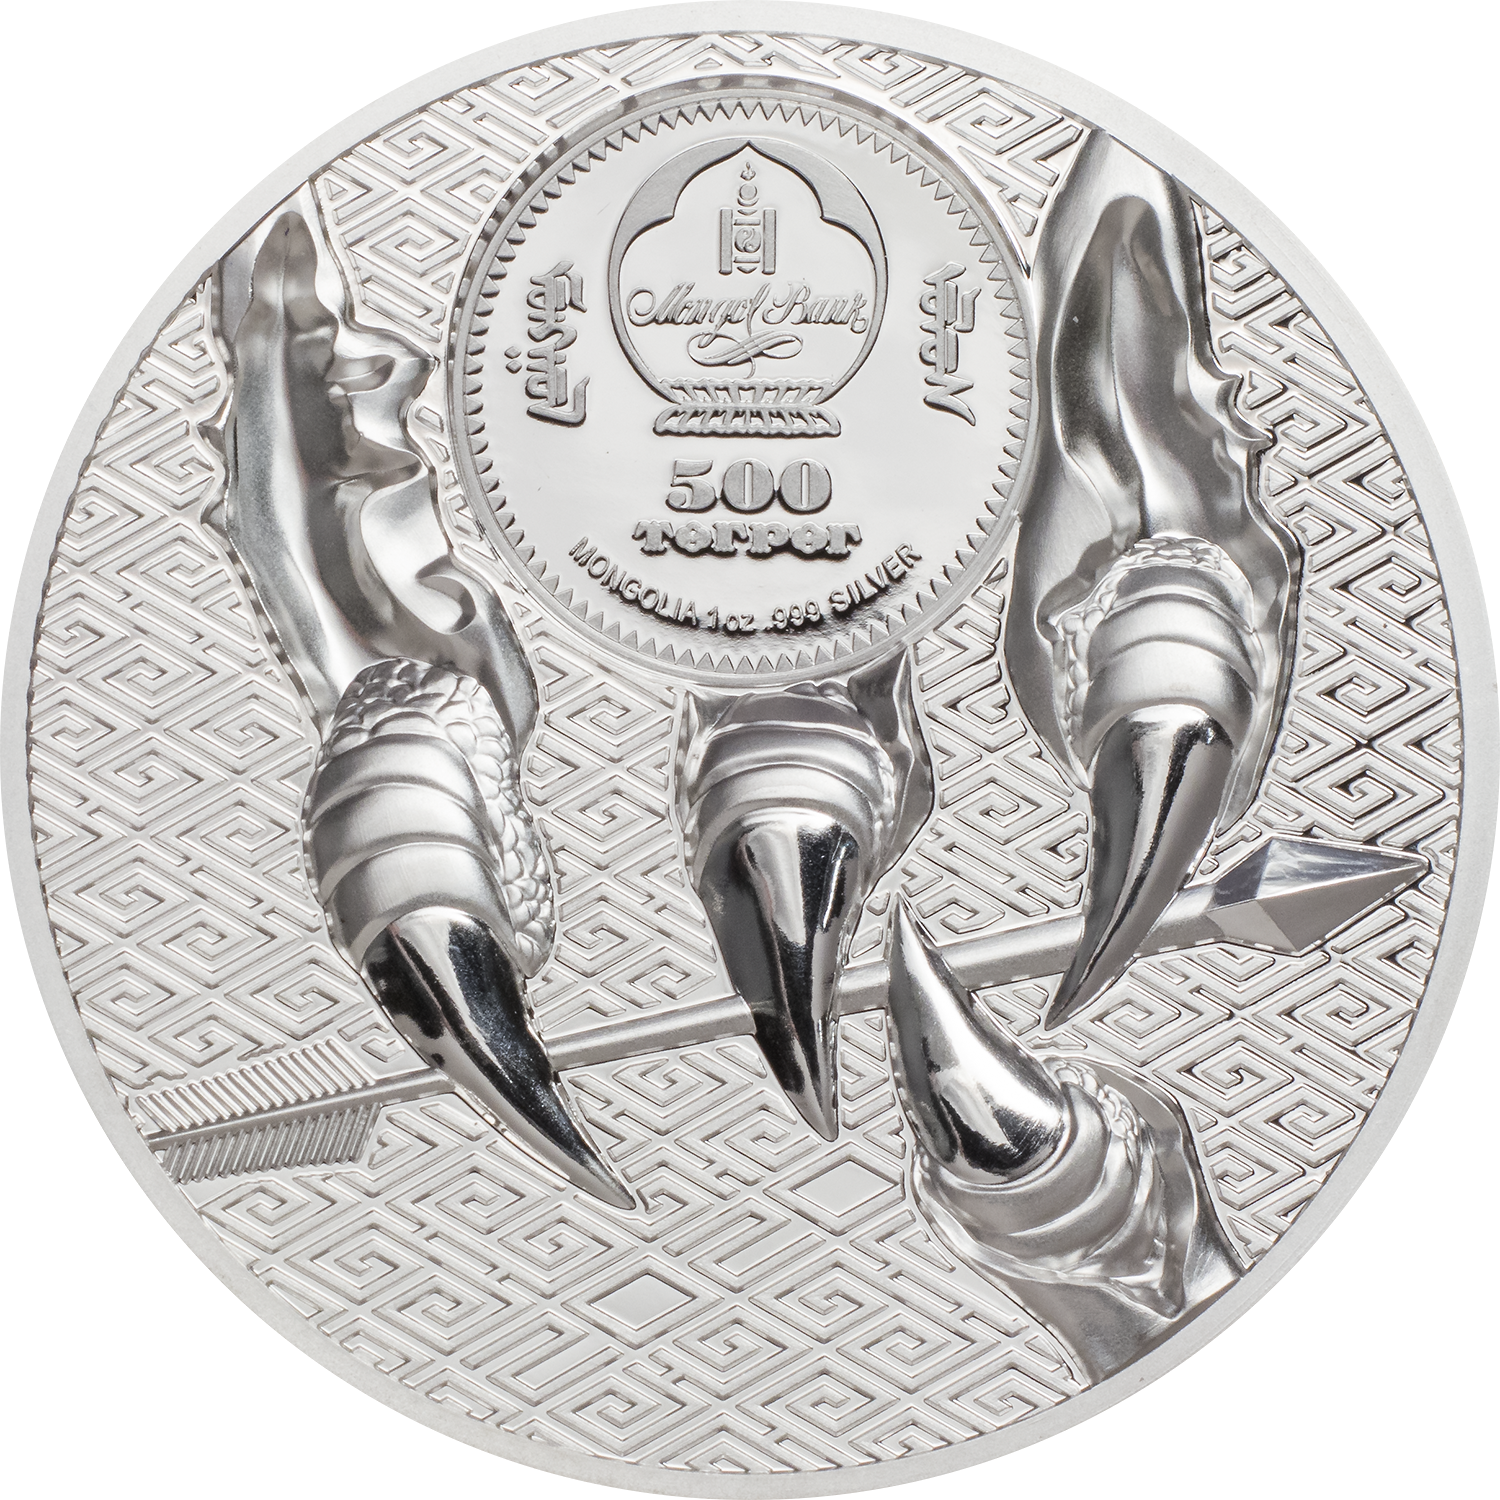 Koop munten online - Zilveren munt - Majestic eagle - Limited edition keerzijde